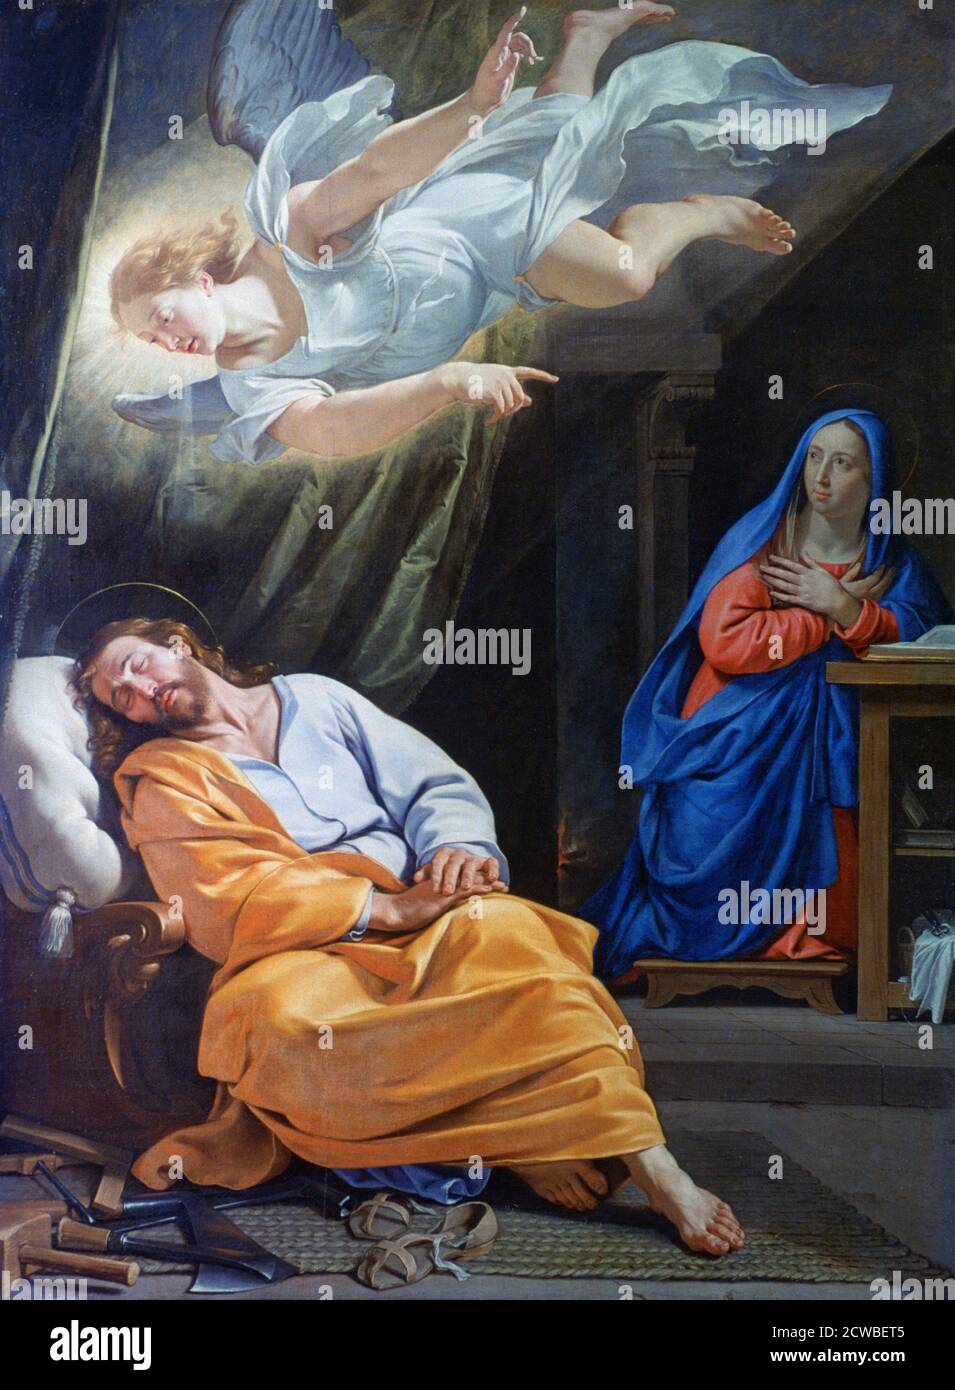 Le rêve de Saint Joseph', c1636. Artiste: Philippe de Champaigne. Philippe de Champaigne (1602-1674) est un peintre de l'époque baroque française, un important représentant de l'école française. Banque D'Images